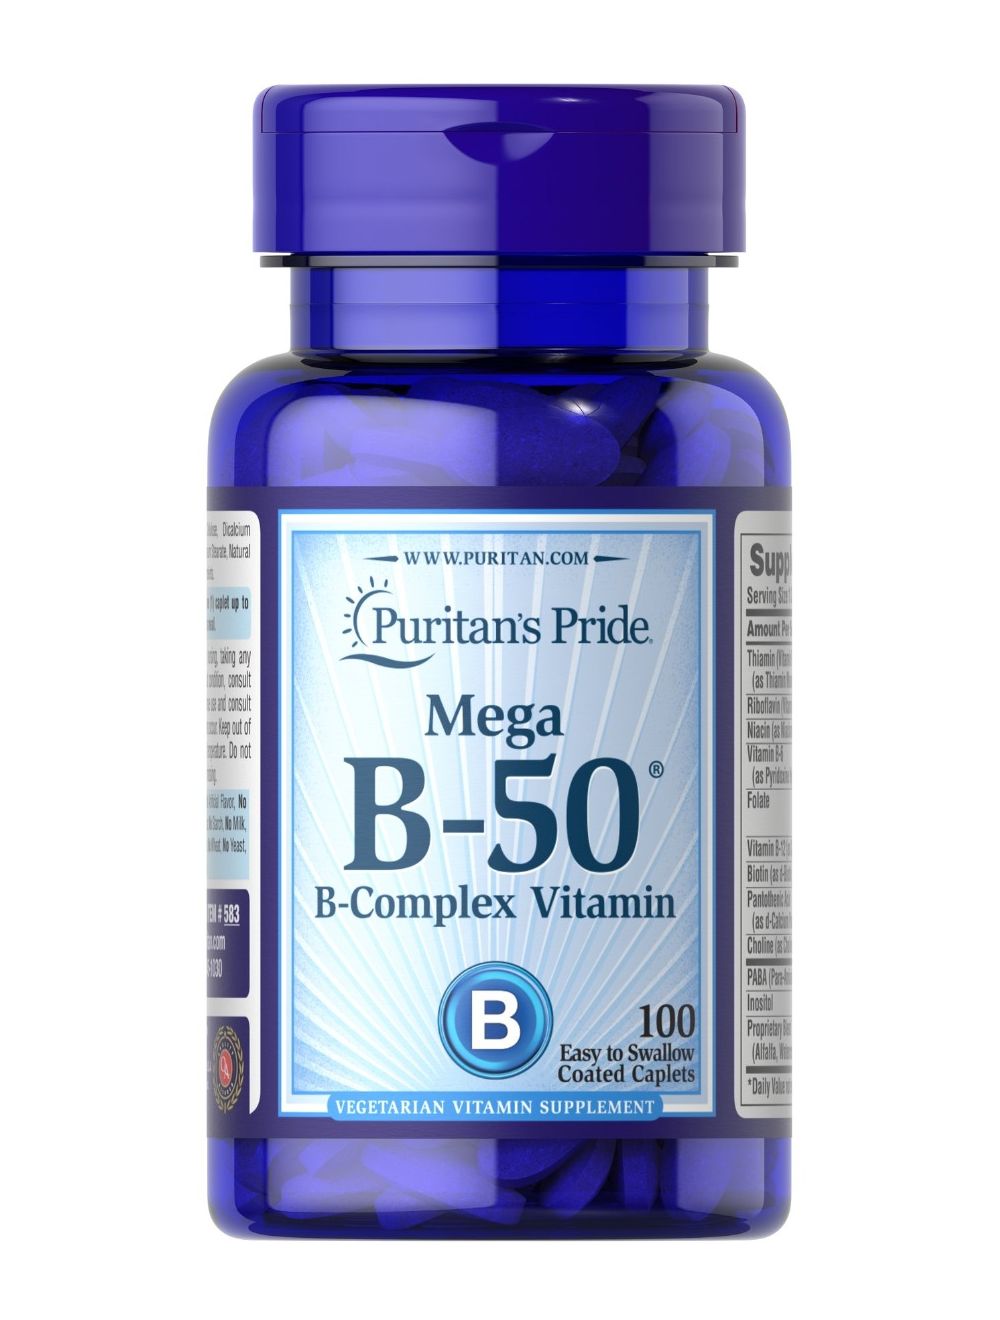 pomp Specimen Ideaal Puritan's Pride Vitamine B-50 complex Vitamin 100 Caplet 583